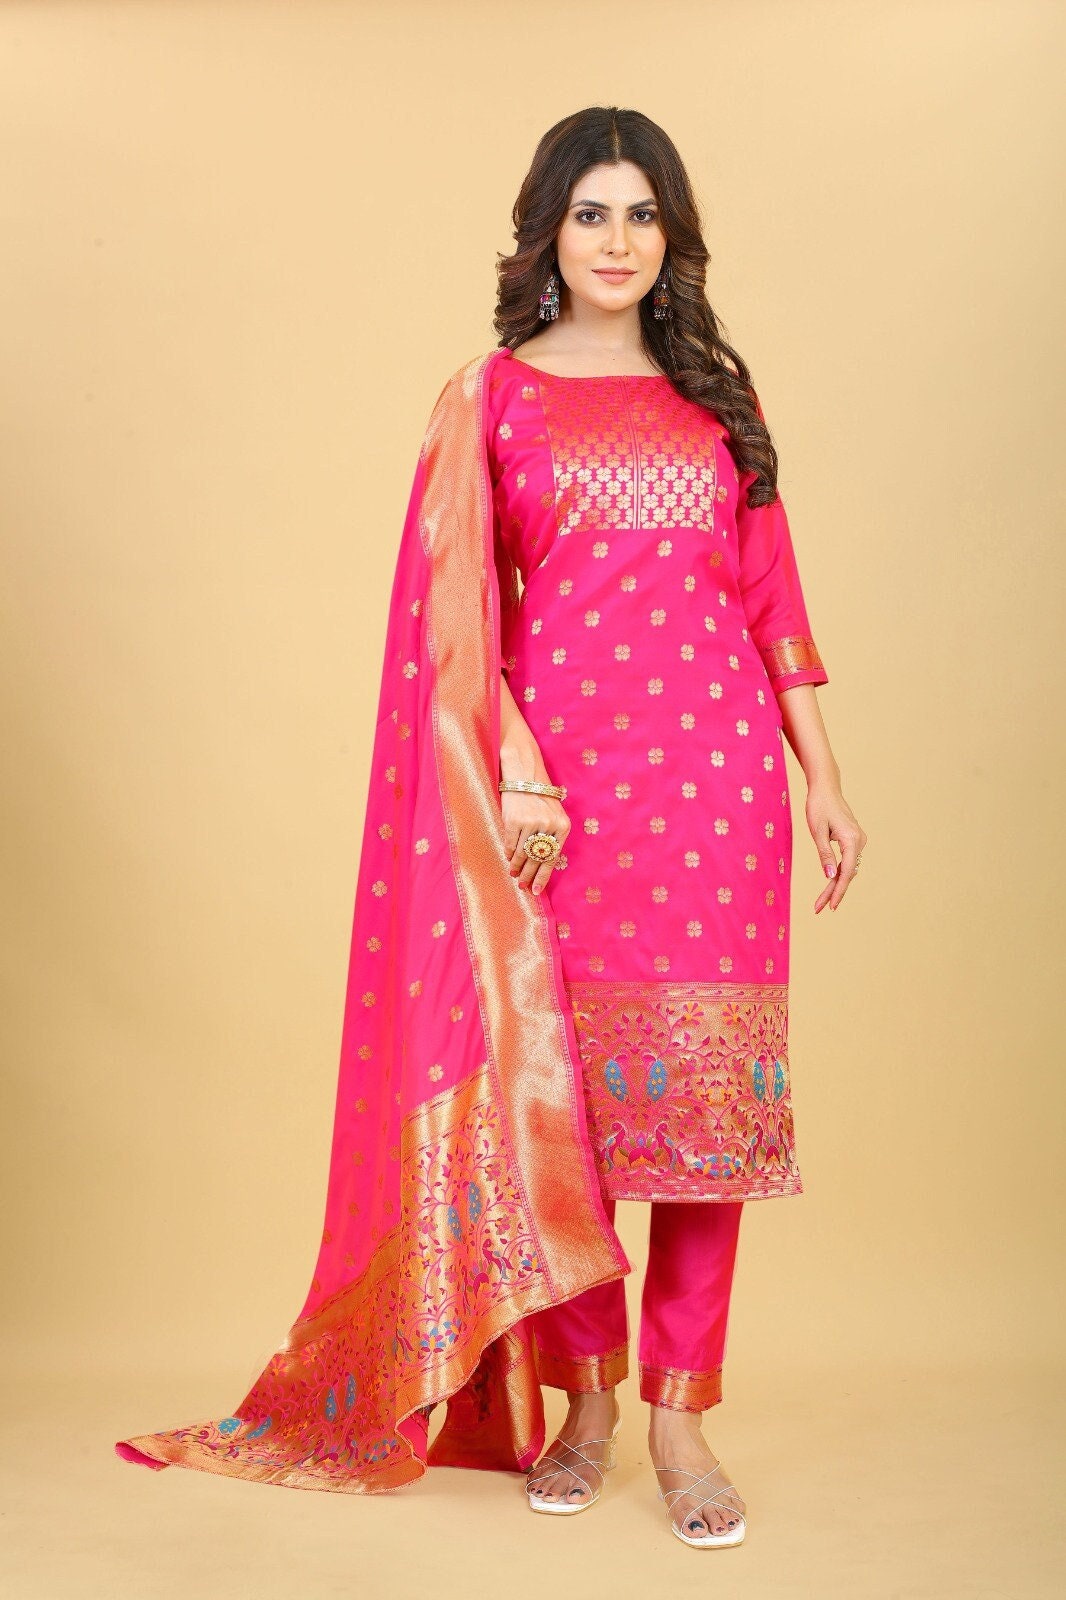 Baby Pink Color Georgette Material Resham Work Anarkali Salwar Suit